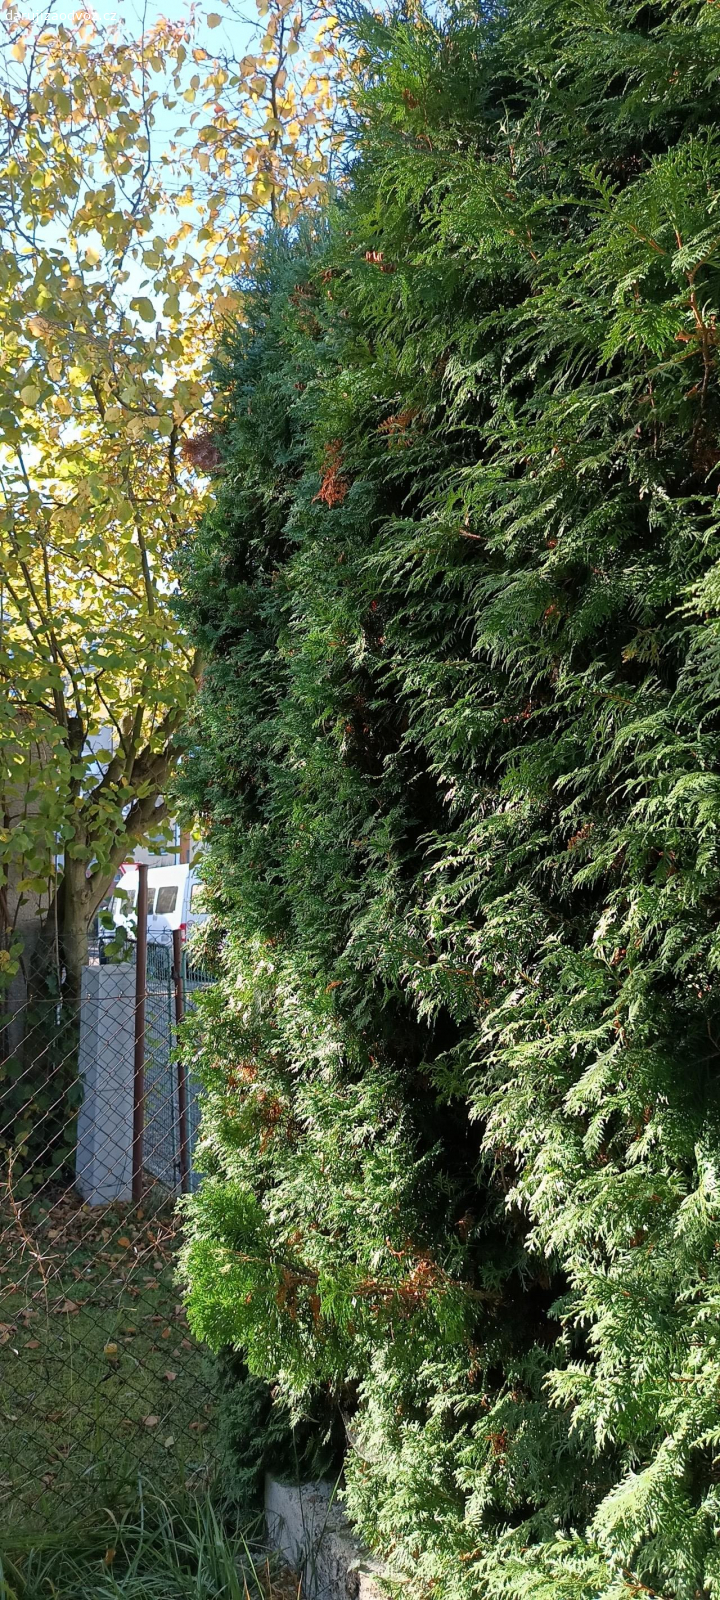 Thuje. Daruji thuje ze živého plotu na tvorbu vazeb a dekorací za pokácení a odstranění pařezů s kořeny. Výška cca 3metry, délka živého plotu cca 8 metrů.